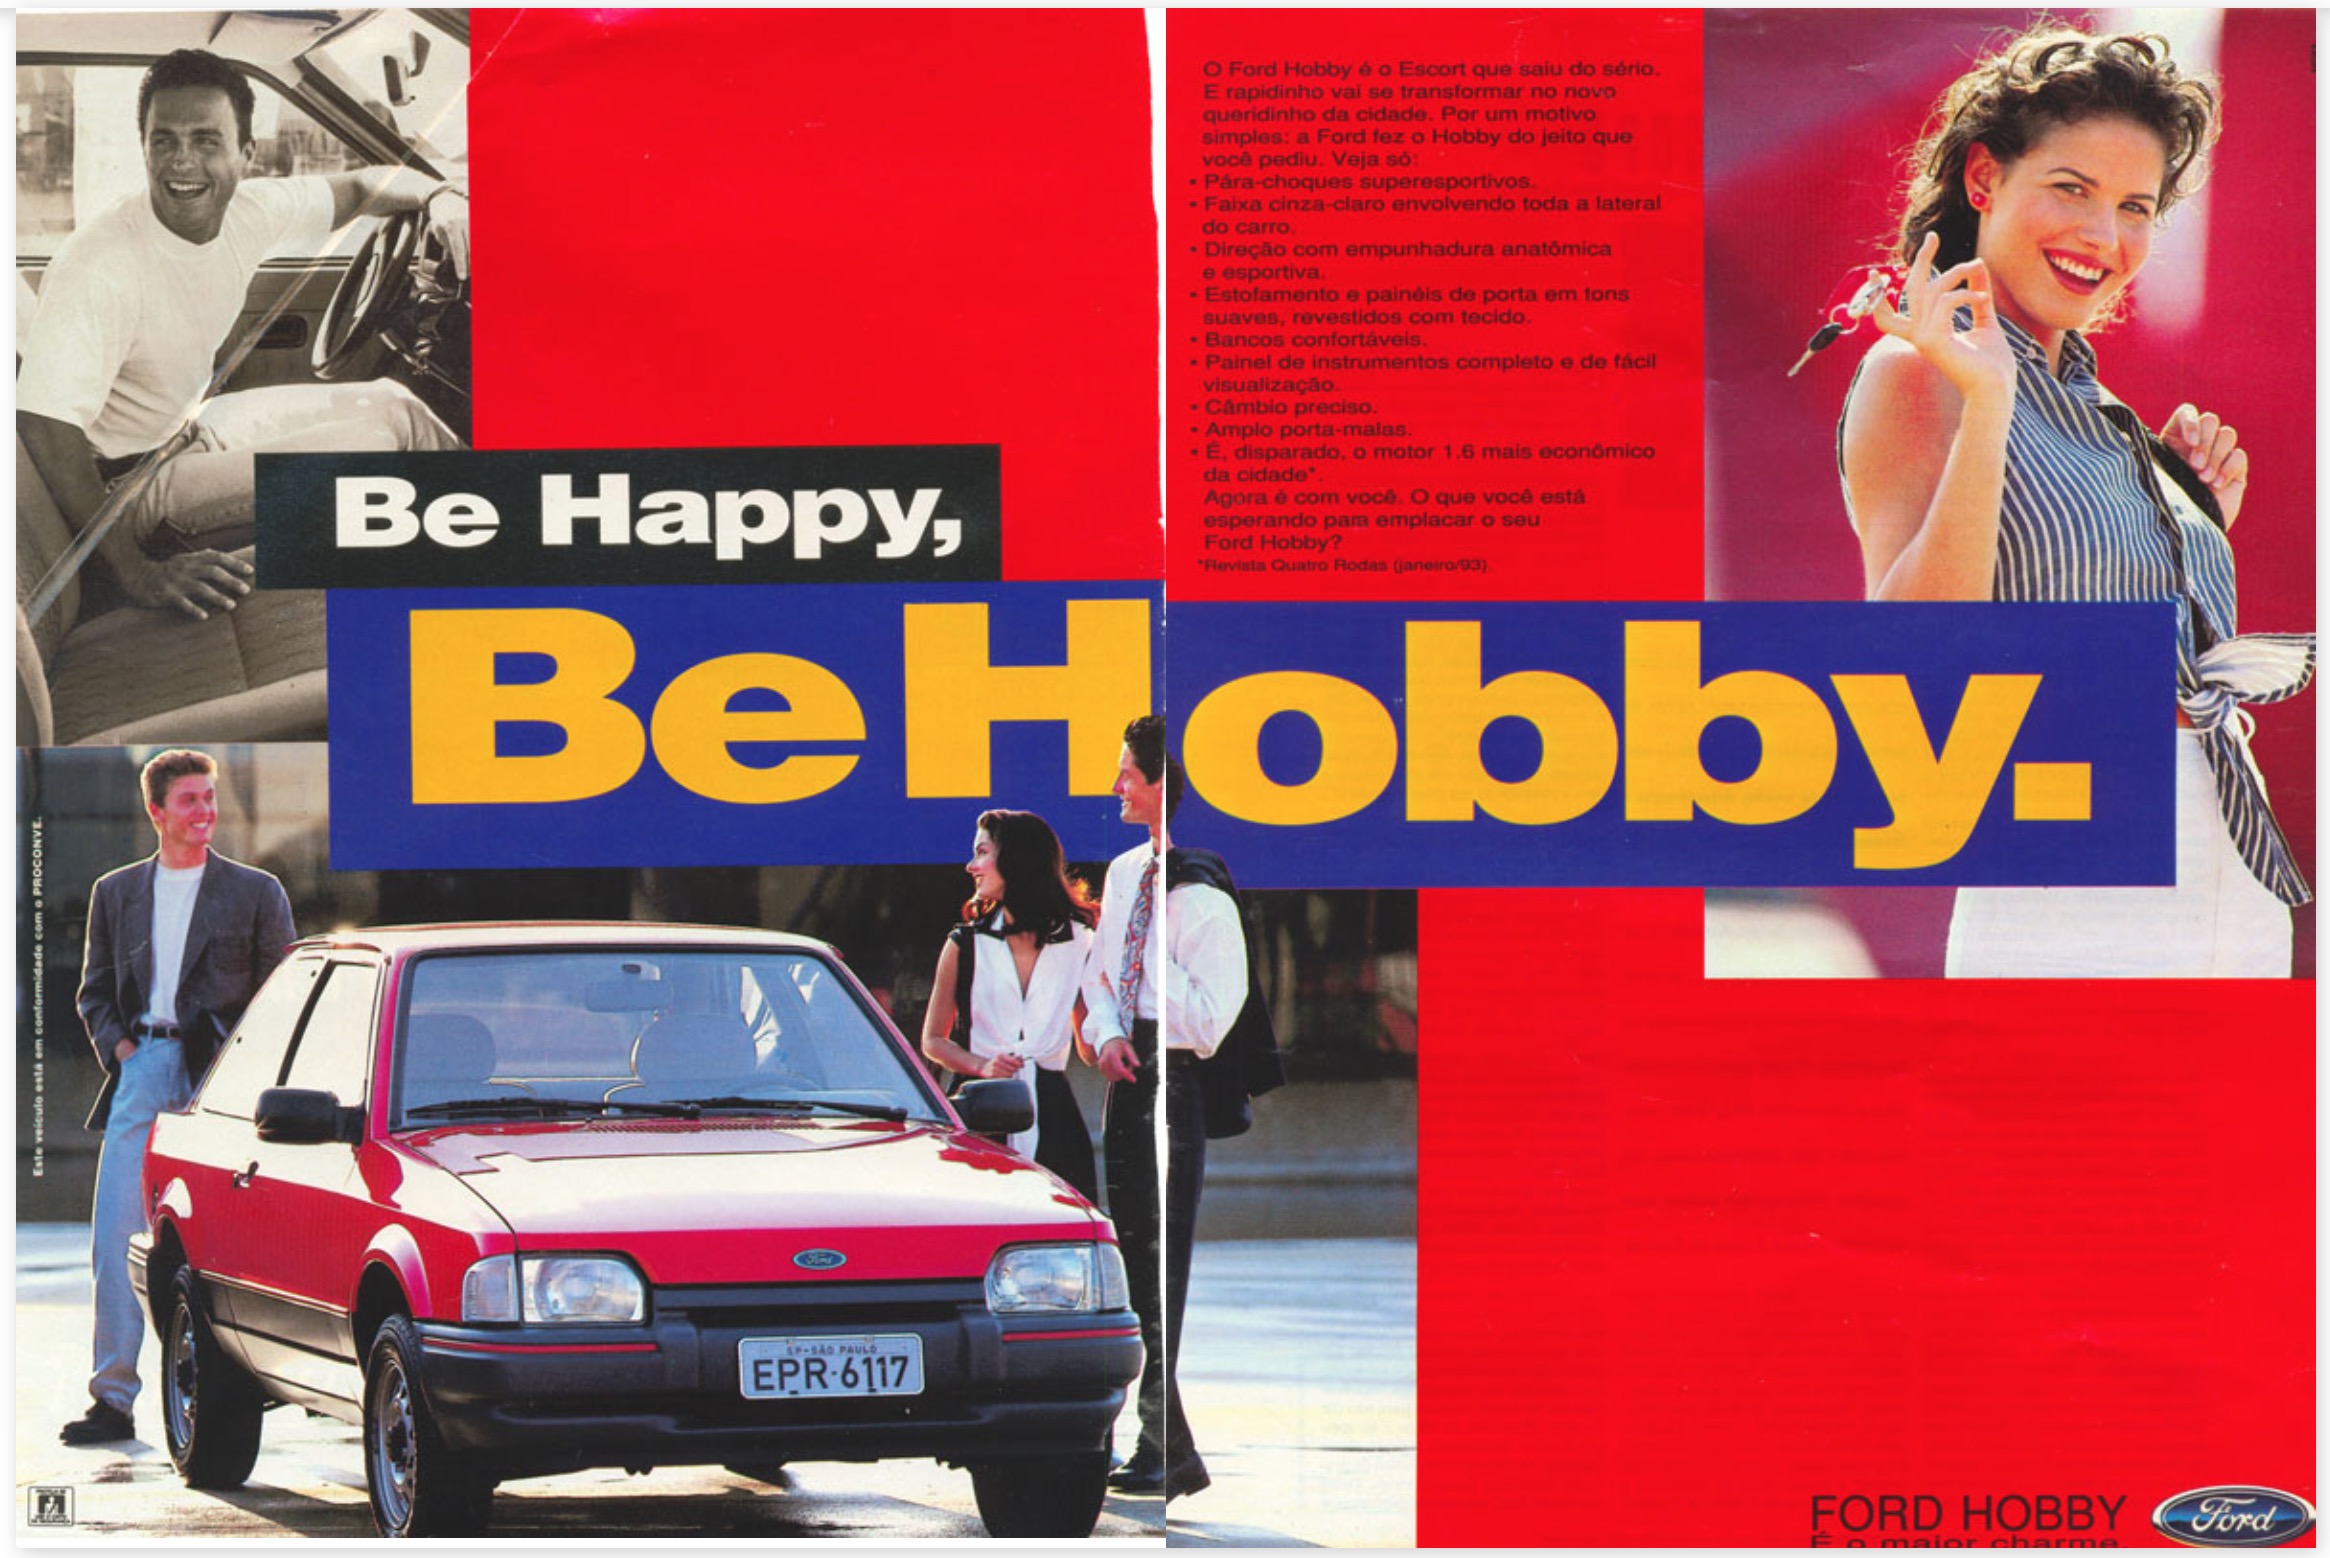 Anúncio da Ford promovendo a geração Hobby do Escort em 1993